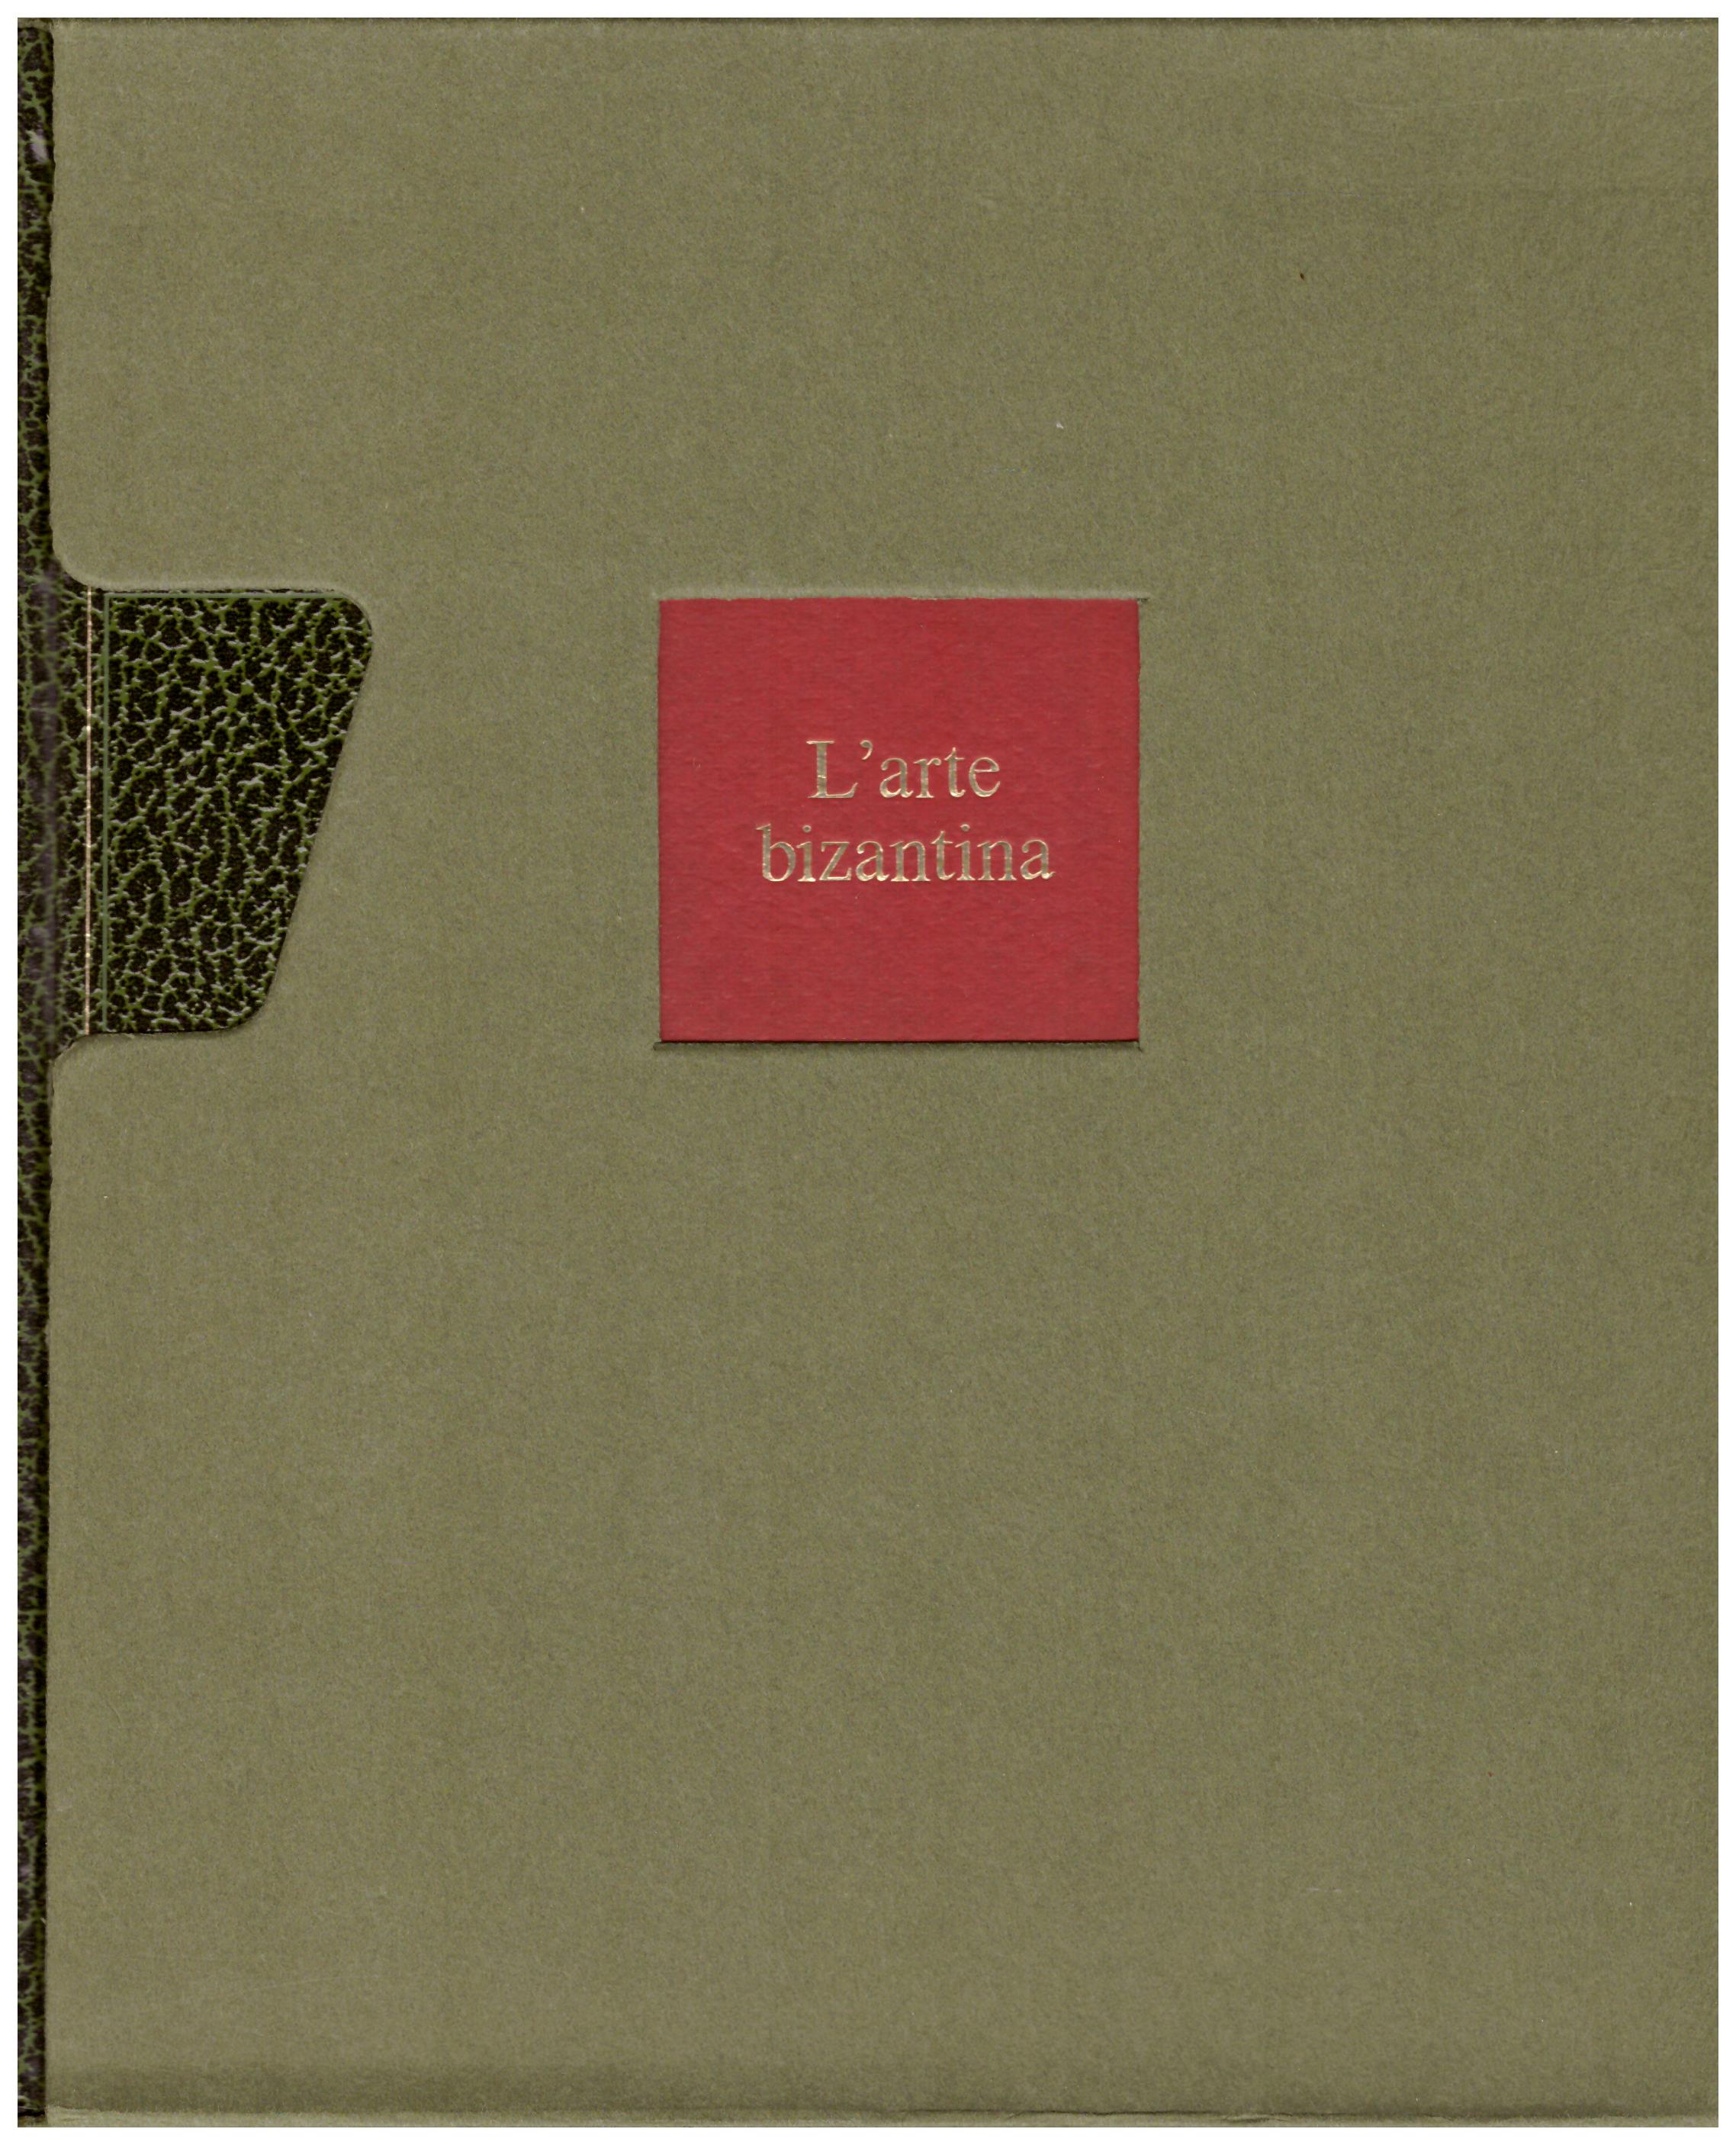 Titolo: L'arte nel mondo n.6 L'arte bizantina Autore: Christa Schug-Wille Editore: Rizzoli, 1970